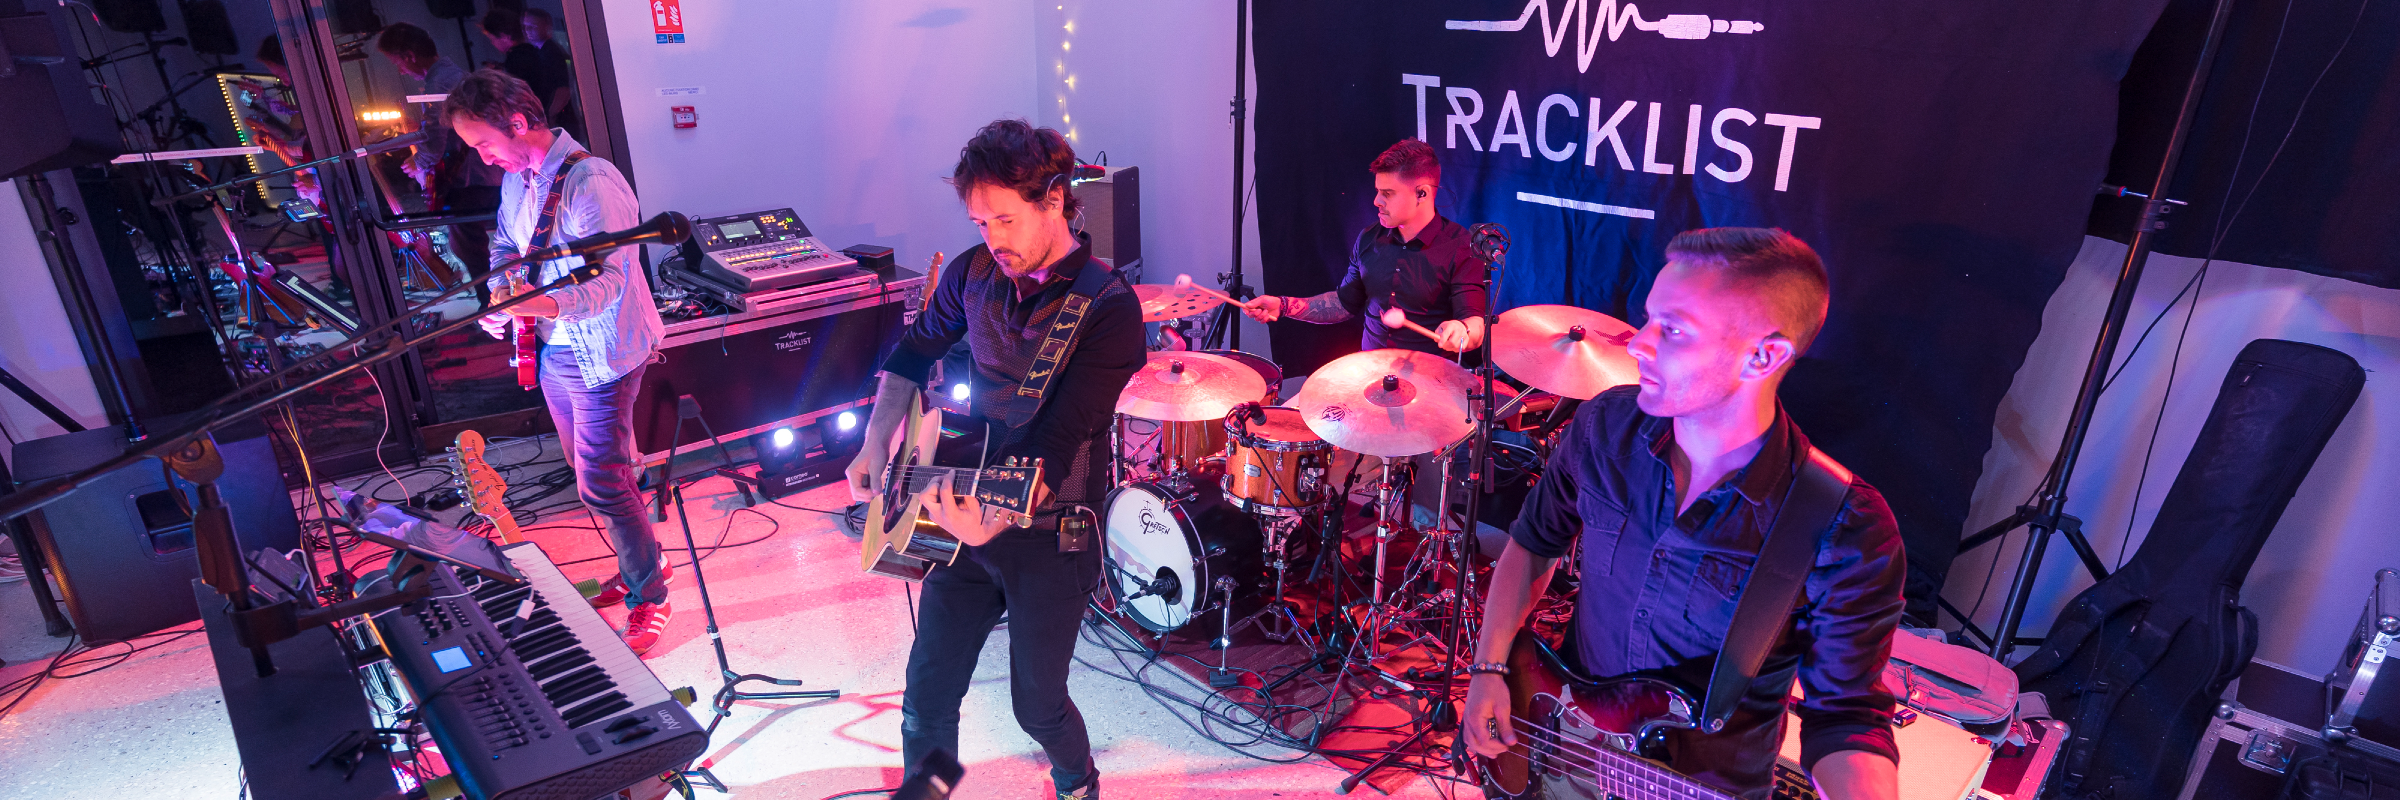 TRACKLIST, groupe de musique Rock en représentation à Vendée - photo de couverture n° 2